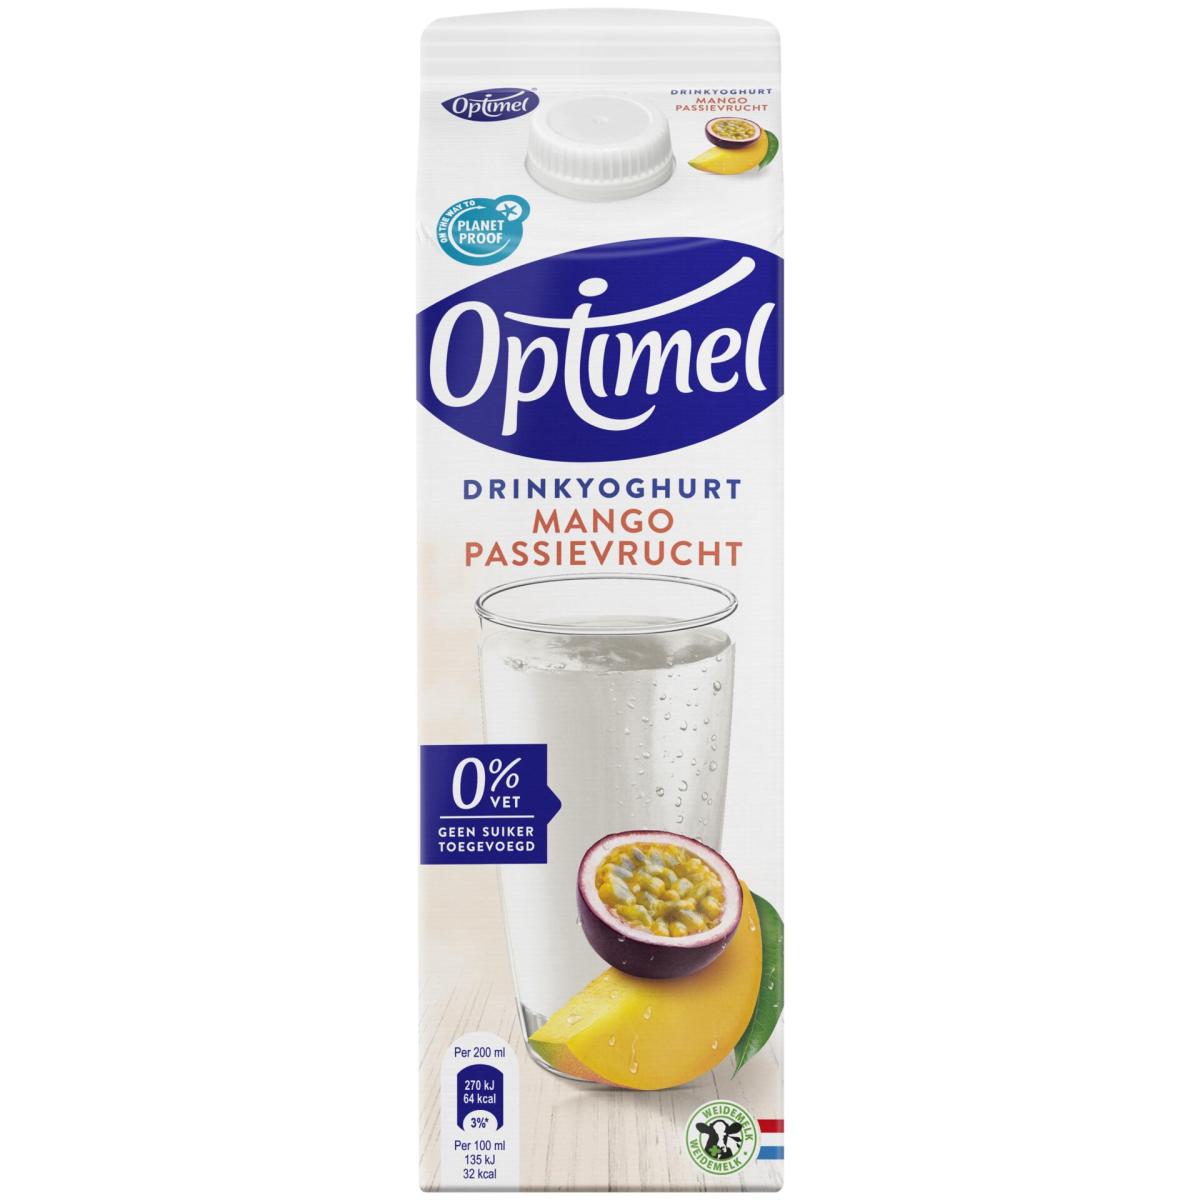 Optimel Drinkyoghurt mango passievrucht 0% vet 1L